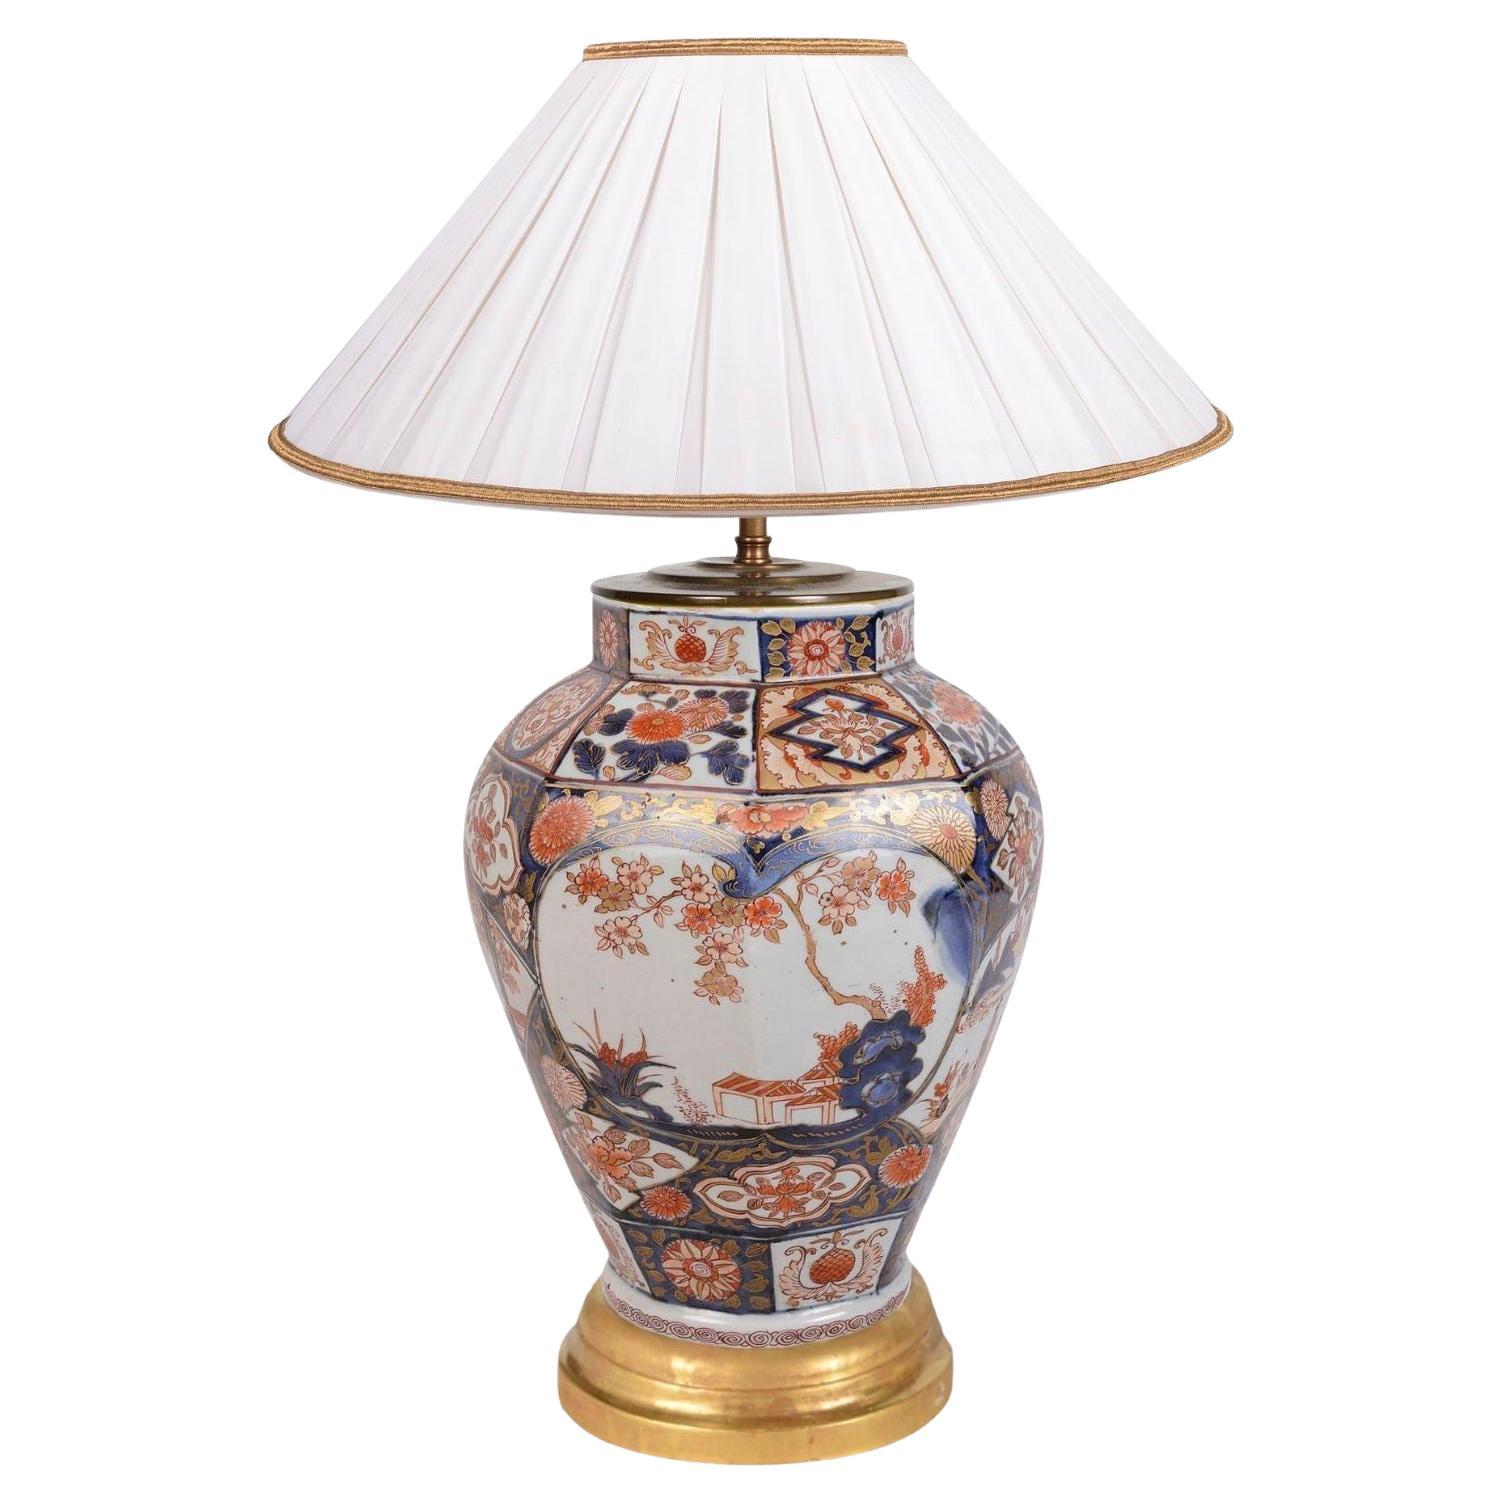 Japanische Arita-Imari-Vase/Lampe aus dem 18. Jahrhundert.